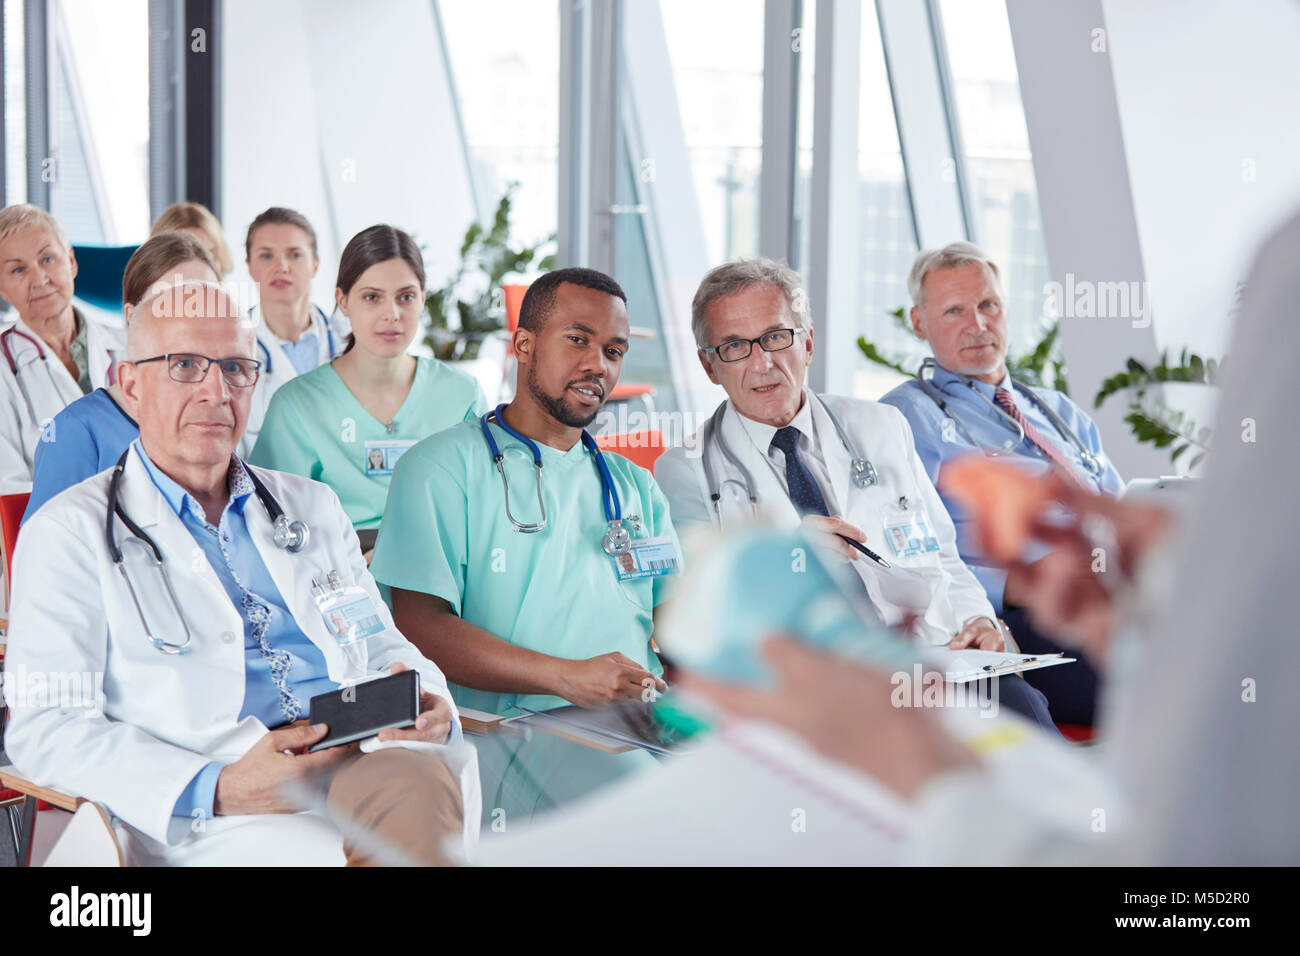 Chirurgen, Ärzte und Krankenschwestern in Konferenz Publikum Stockfoto